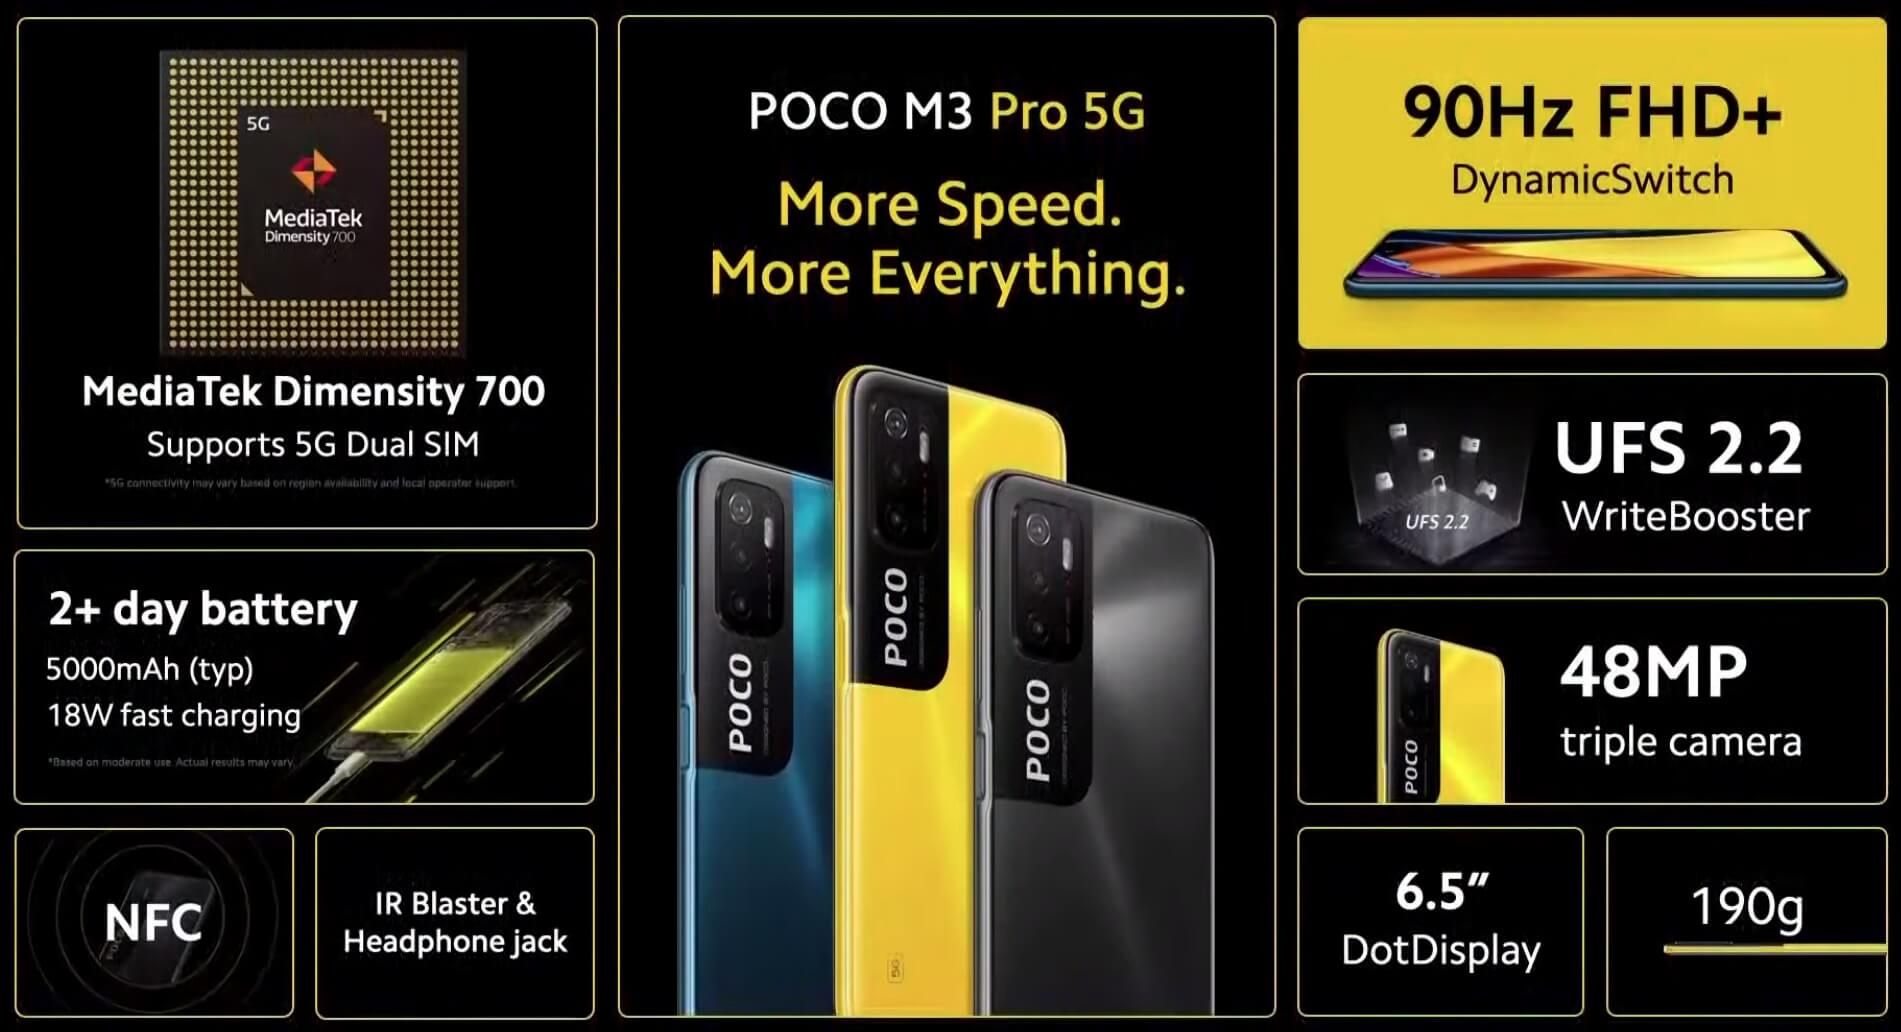 POCO M3 Pro 5G features